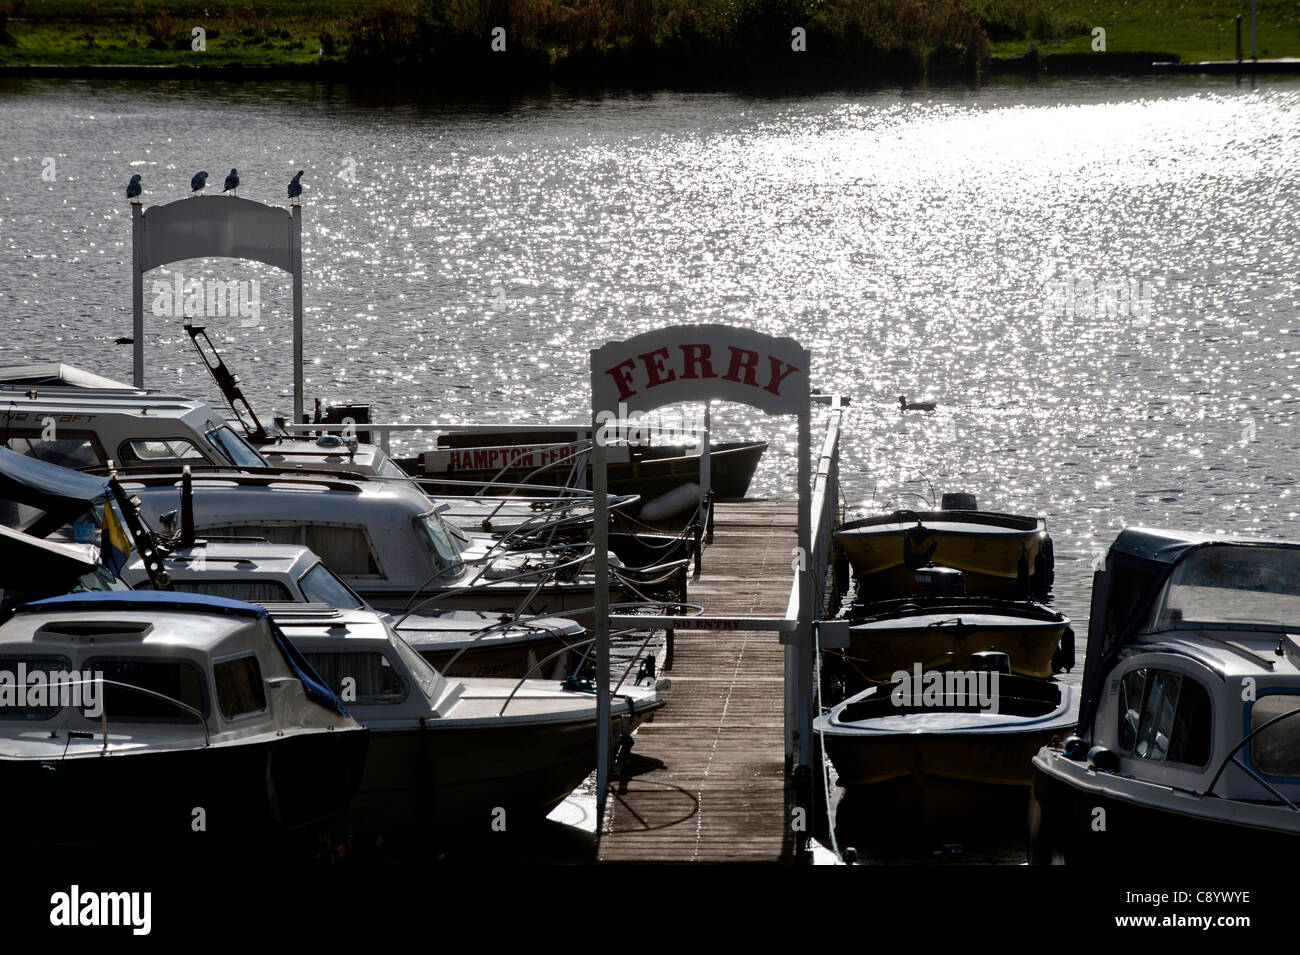 Ocio embarcaciones amarradas en el río Támesis, Hampton, Reino Unido Foto de stock